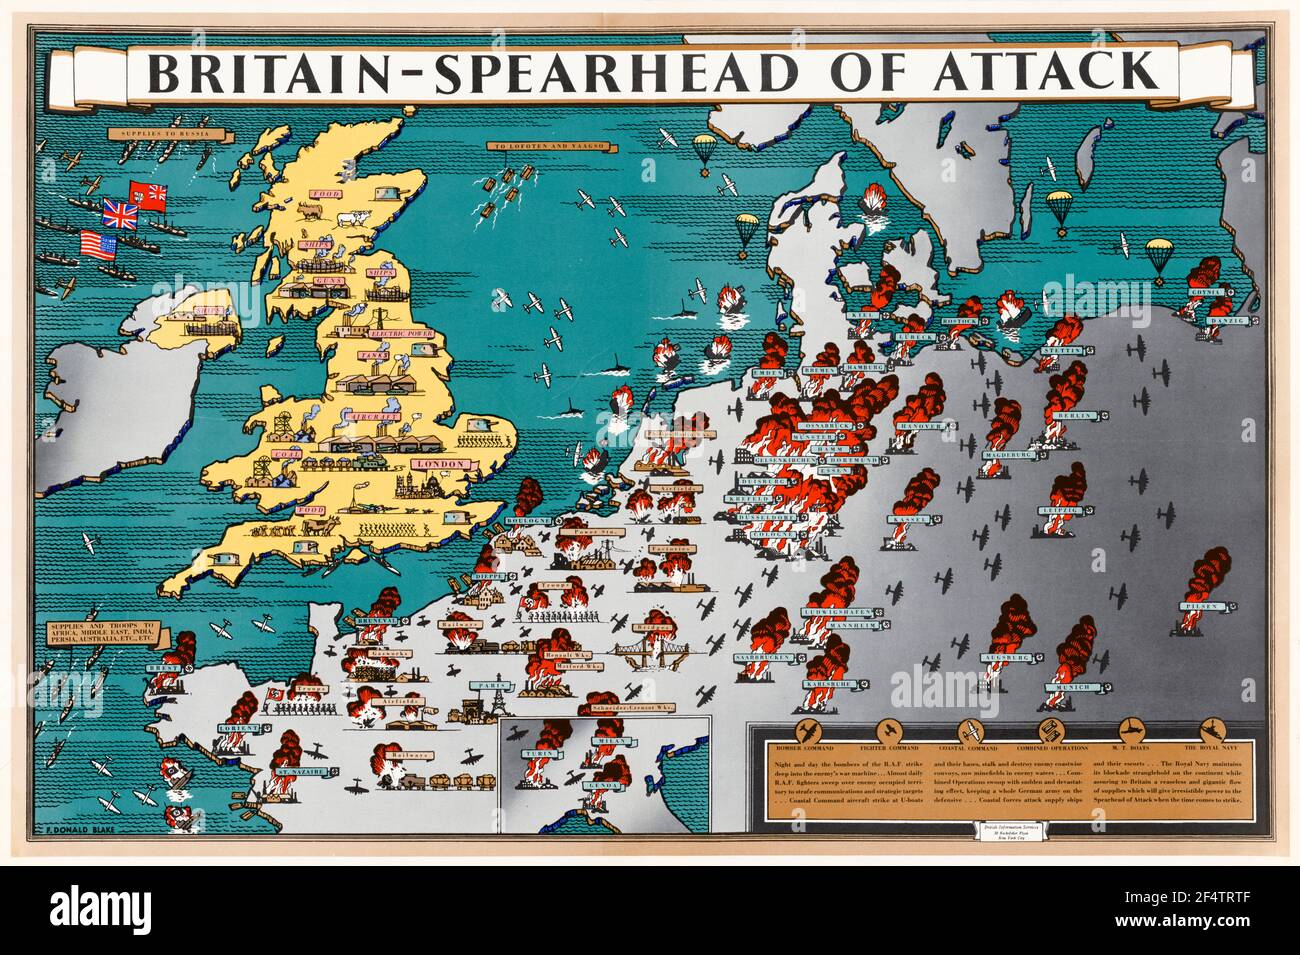 British, WW2, Britain: Punta di diamante dell'attacco, Poster Map che mostra come la produzione in tempo di guerra ha aiutato l'azione militare a liberare l'Europa occupata, 1942-1945 Foto Stock